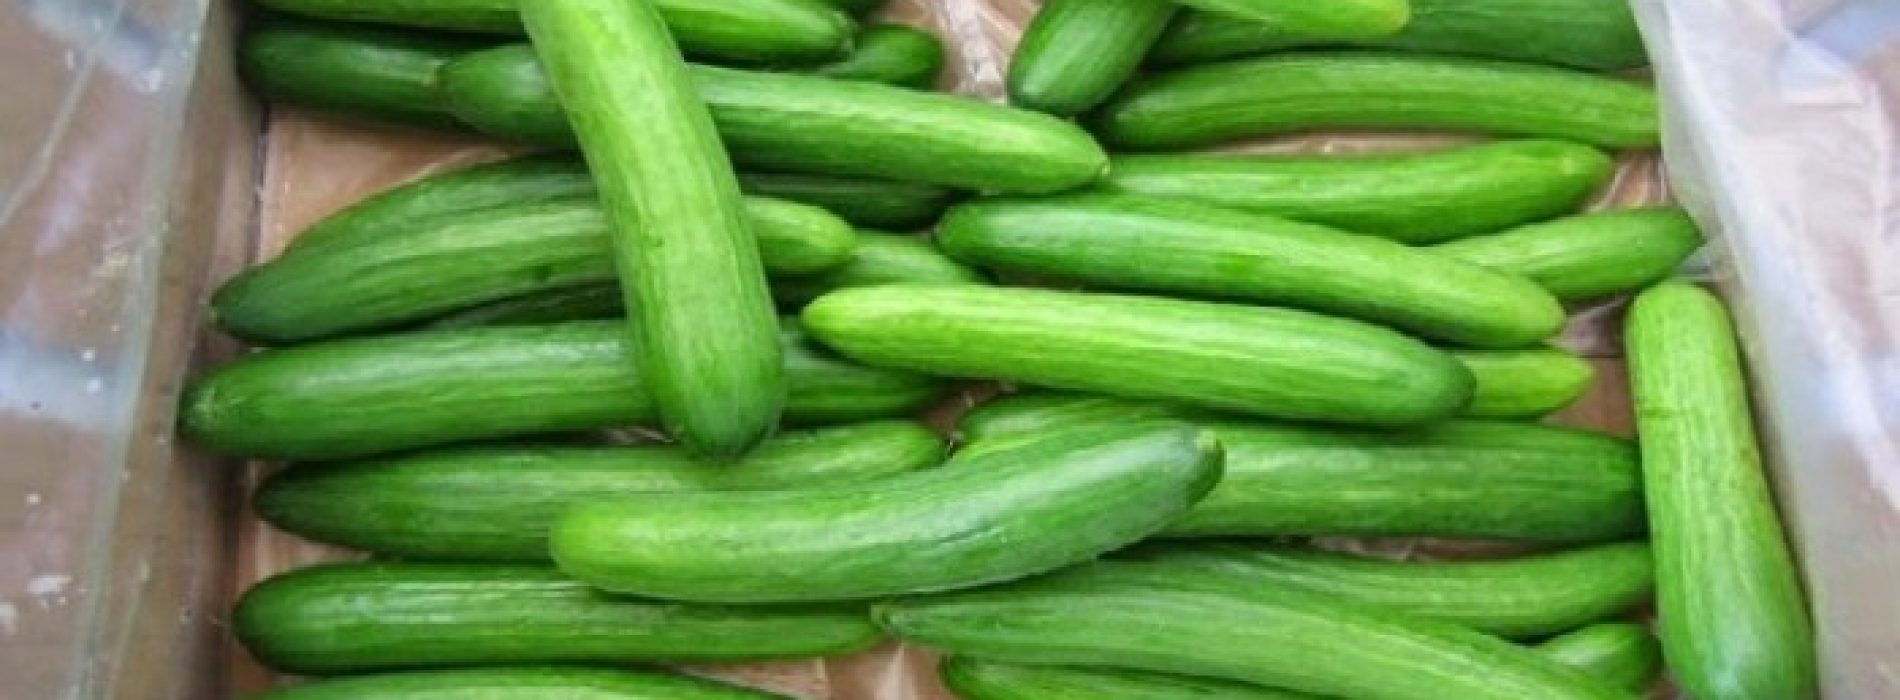 13 Toepassingen voor komkommers die u zal verbazen